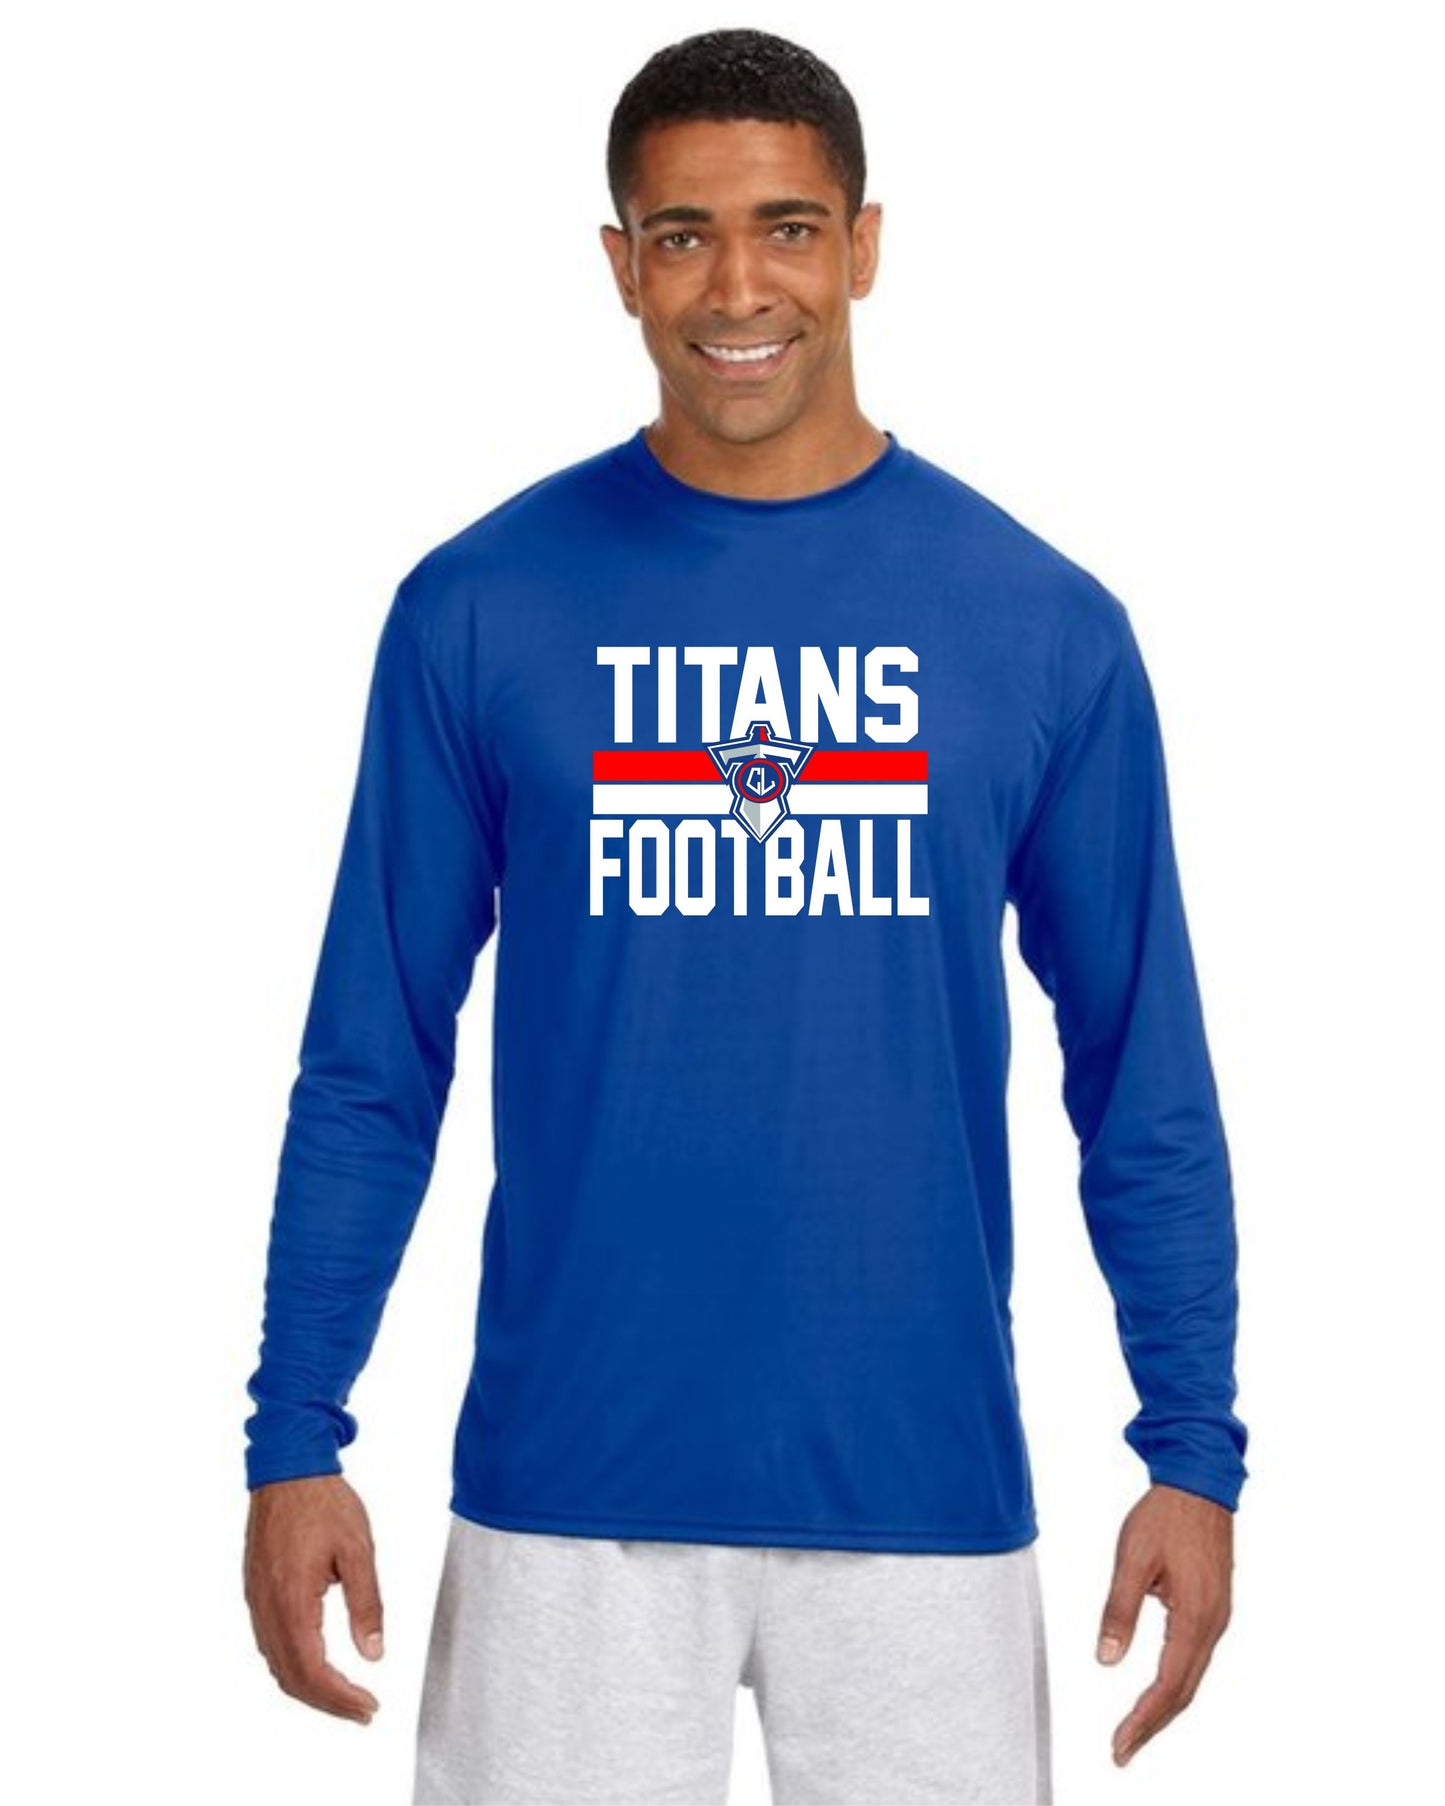 Titans Football Sword T-Shirt